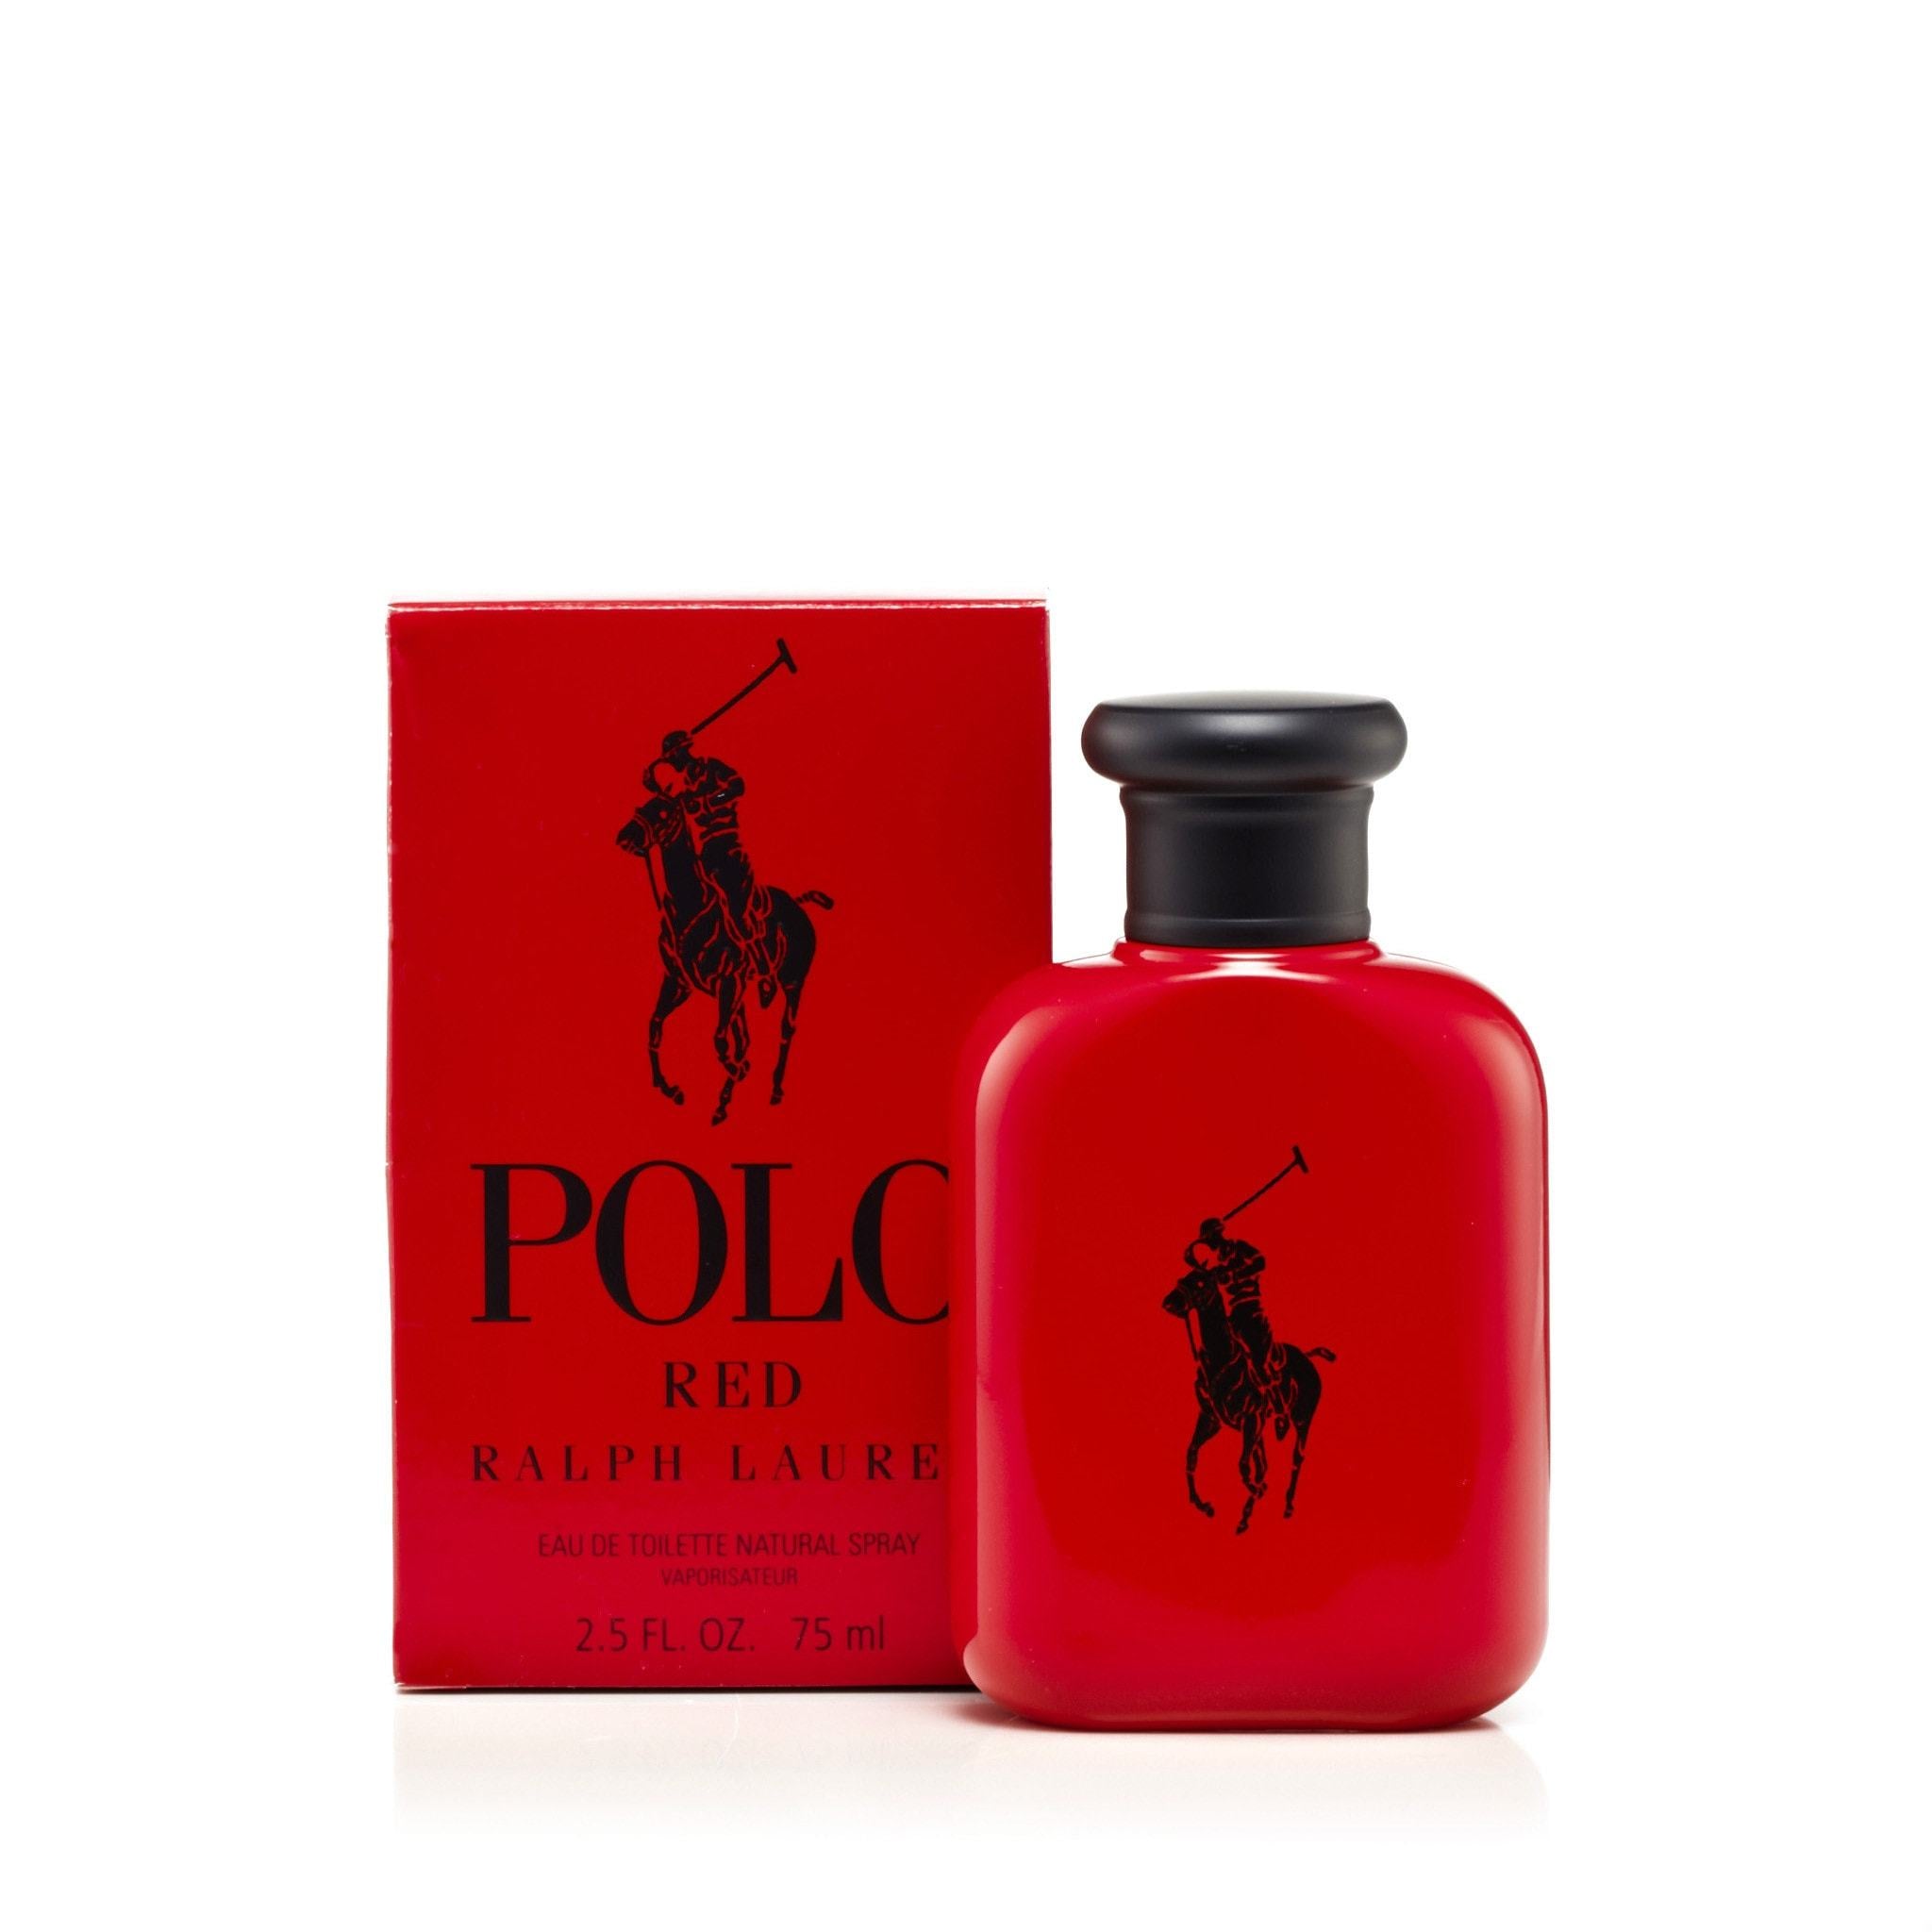 Polo Red by Ralph Lauren 2.5 oz Eau de Toilette Spray / Men